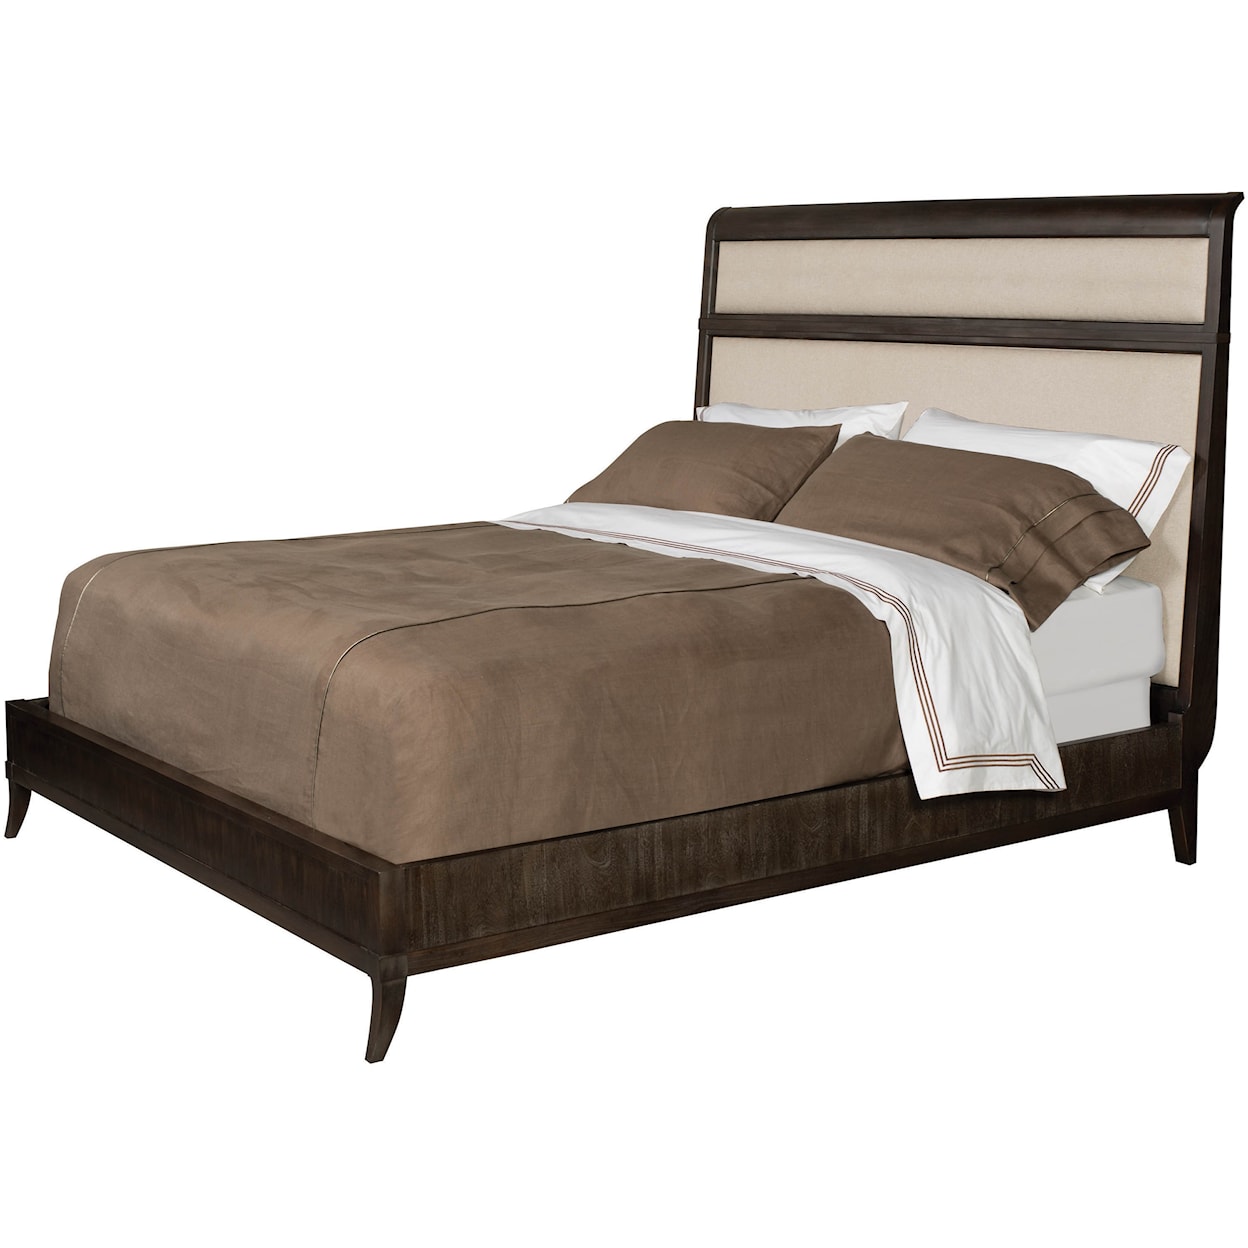 Vanguard Furniture Compendium Arista King Bed